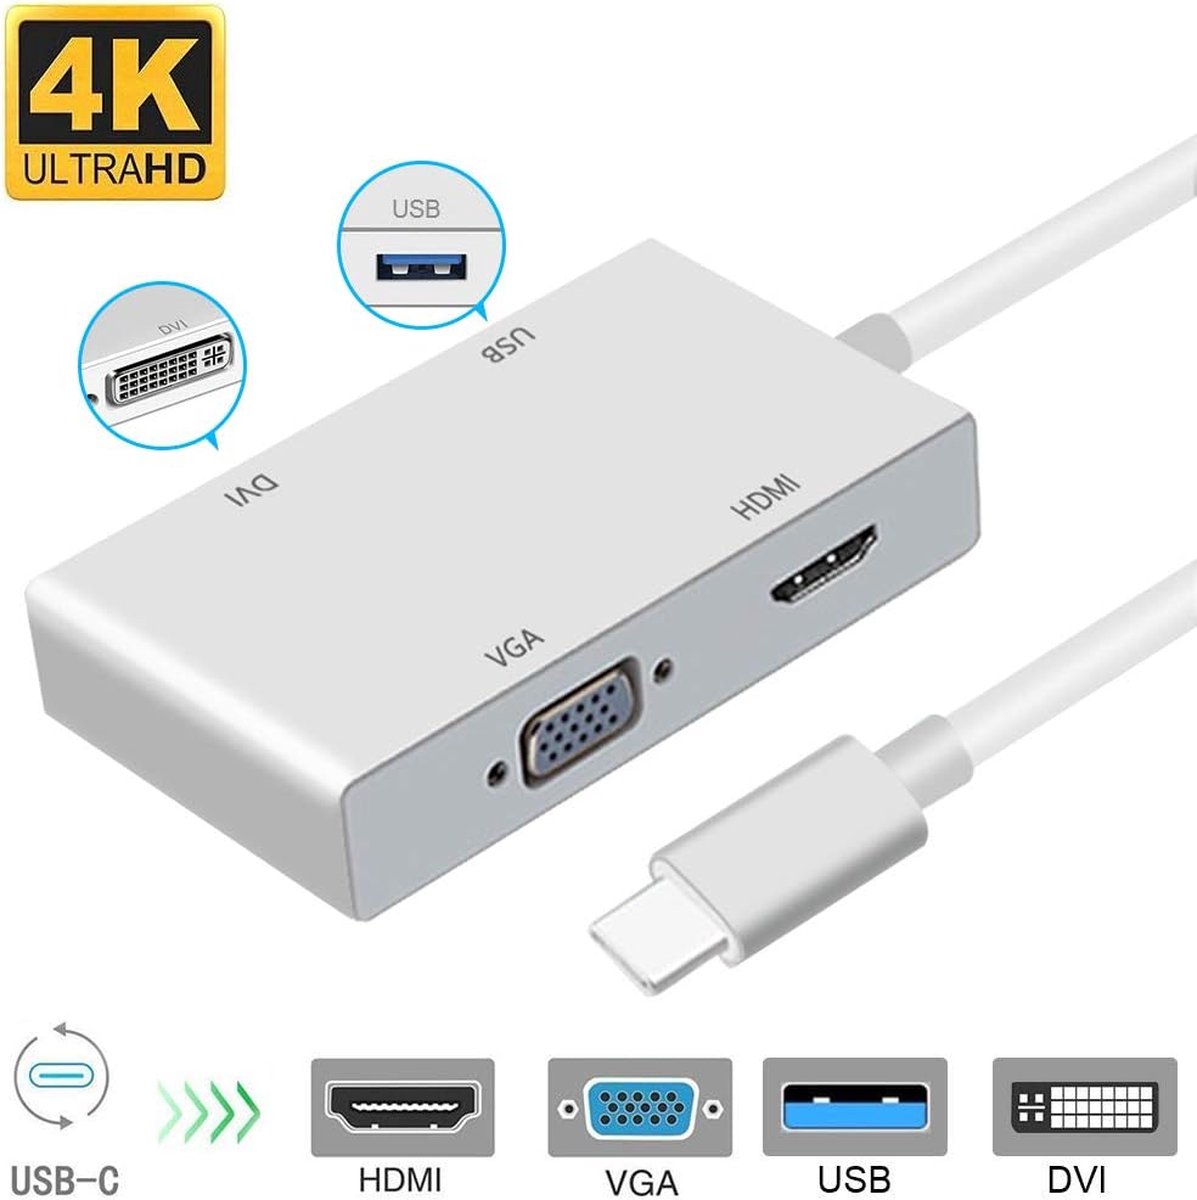 USB C naar DVI adapter Weton USB 3.1 type C naar 4K DVI HDMI 1080P VGA USB 3.0 USB hub multiport videoconverter voor MacBook/MacBook Pro/Chromebook Pixel/Samsung Galaxy S8/S8P naar HDTV/Monitor/Projector